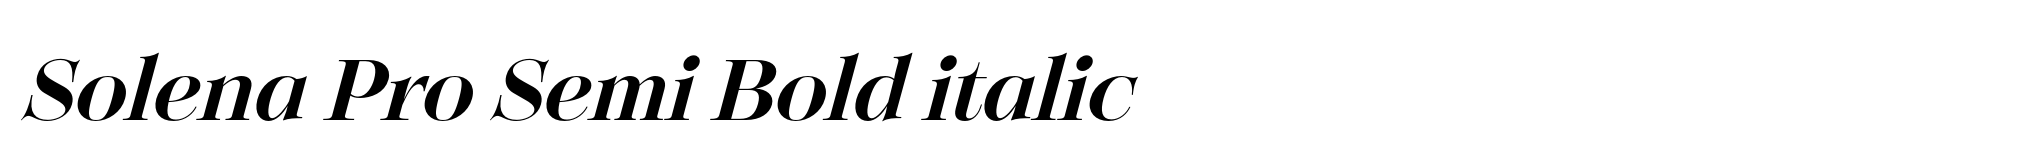 Solena Pro Semi Bold italic image